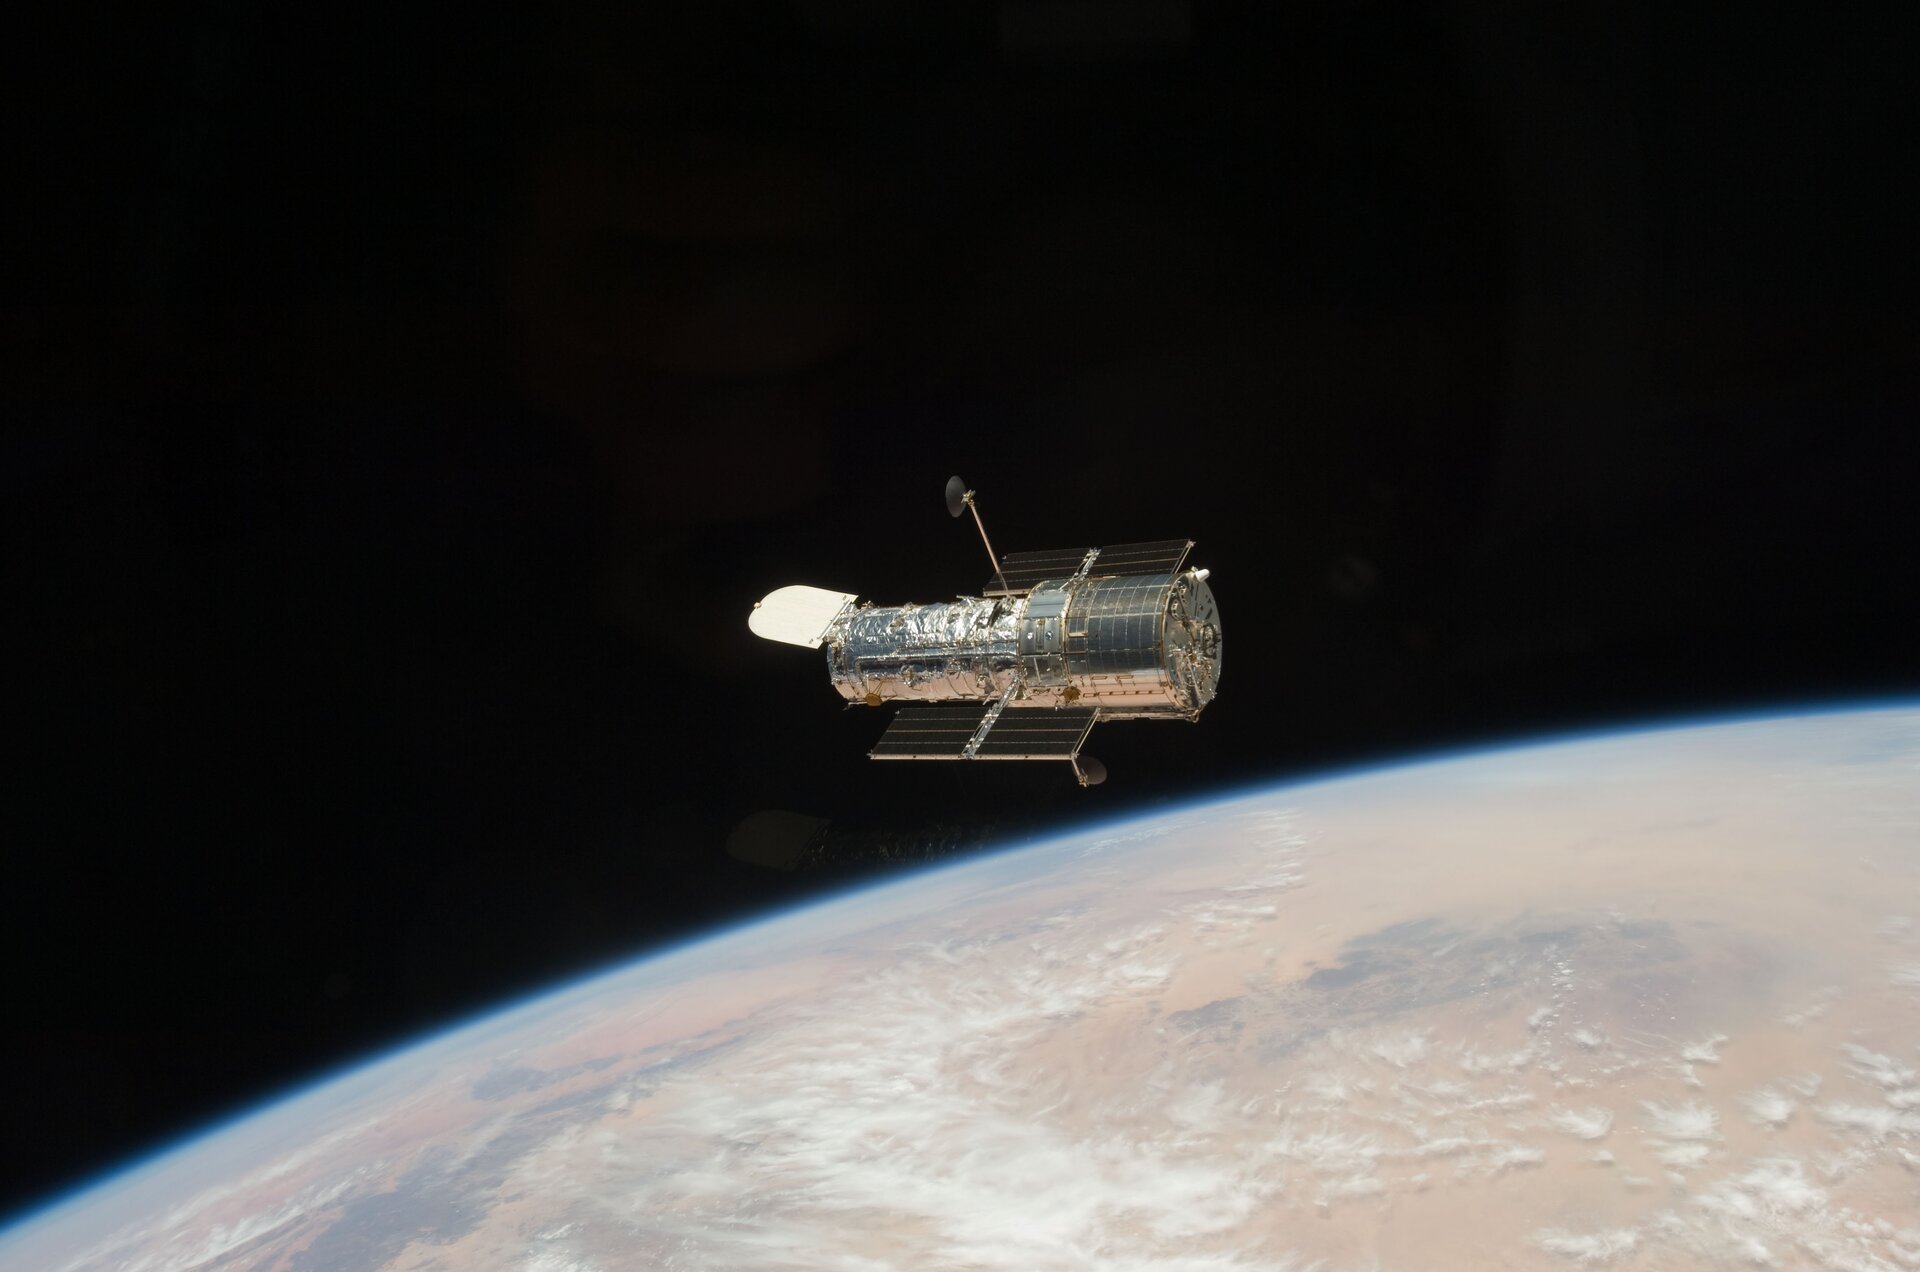 Zdjęcie przedstawia Kosmiczny Teleskop Hubble'a w przestrzeni kosmicznej. Teleskop ma w przybliżeniu kształt srebrnego walca, jest ułożony poziomo. U góry i u dołu tego walca widoczne są czarne panele słoneczne. W tle widoczne są fragment Ziemi i czerń kosmosu.